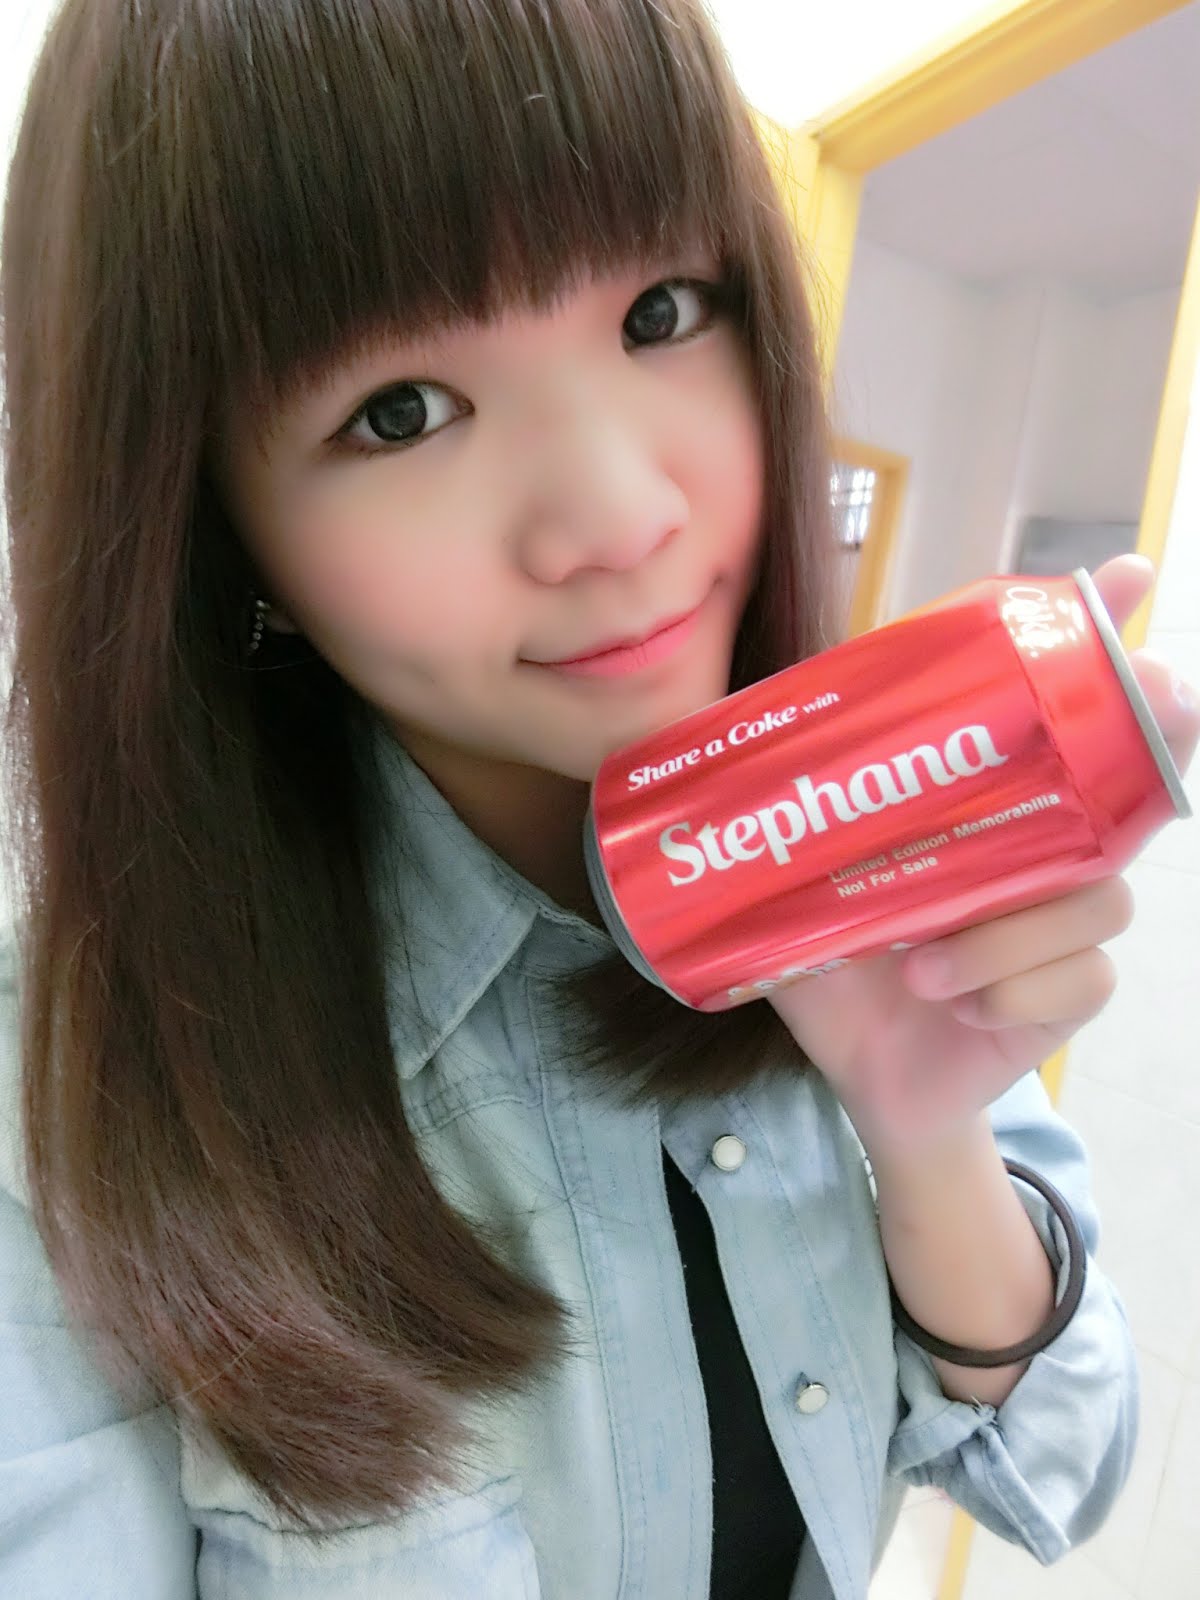 Stephana's cola